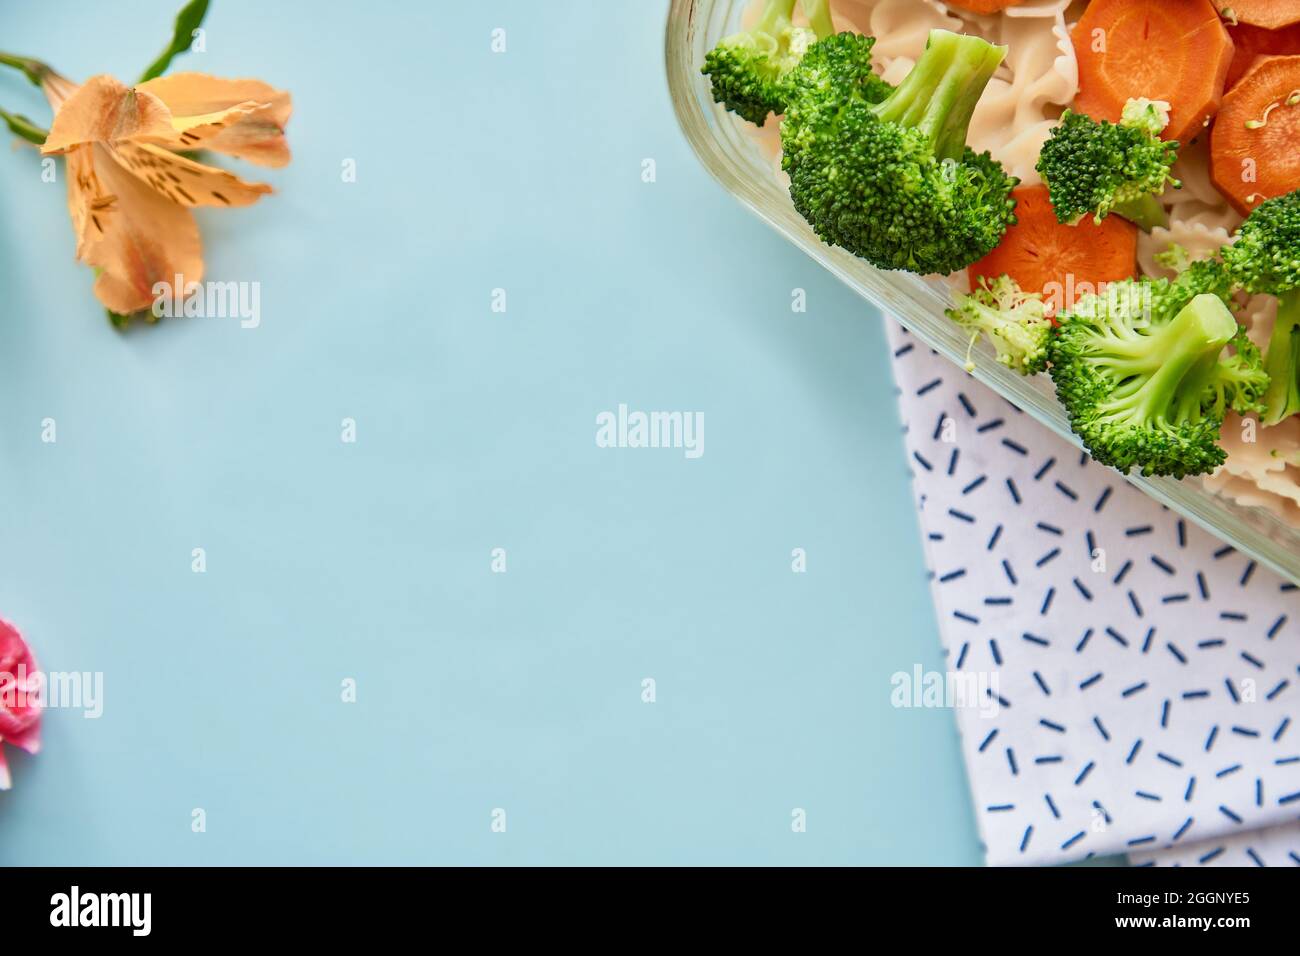 Cibo sano, cucina mediterranea, pasta con verdure: Carote e broccoli. Vista dall'alto, spazio di copia. Foto di alta qualità Foto Stock